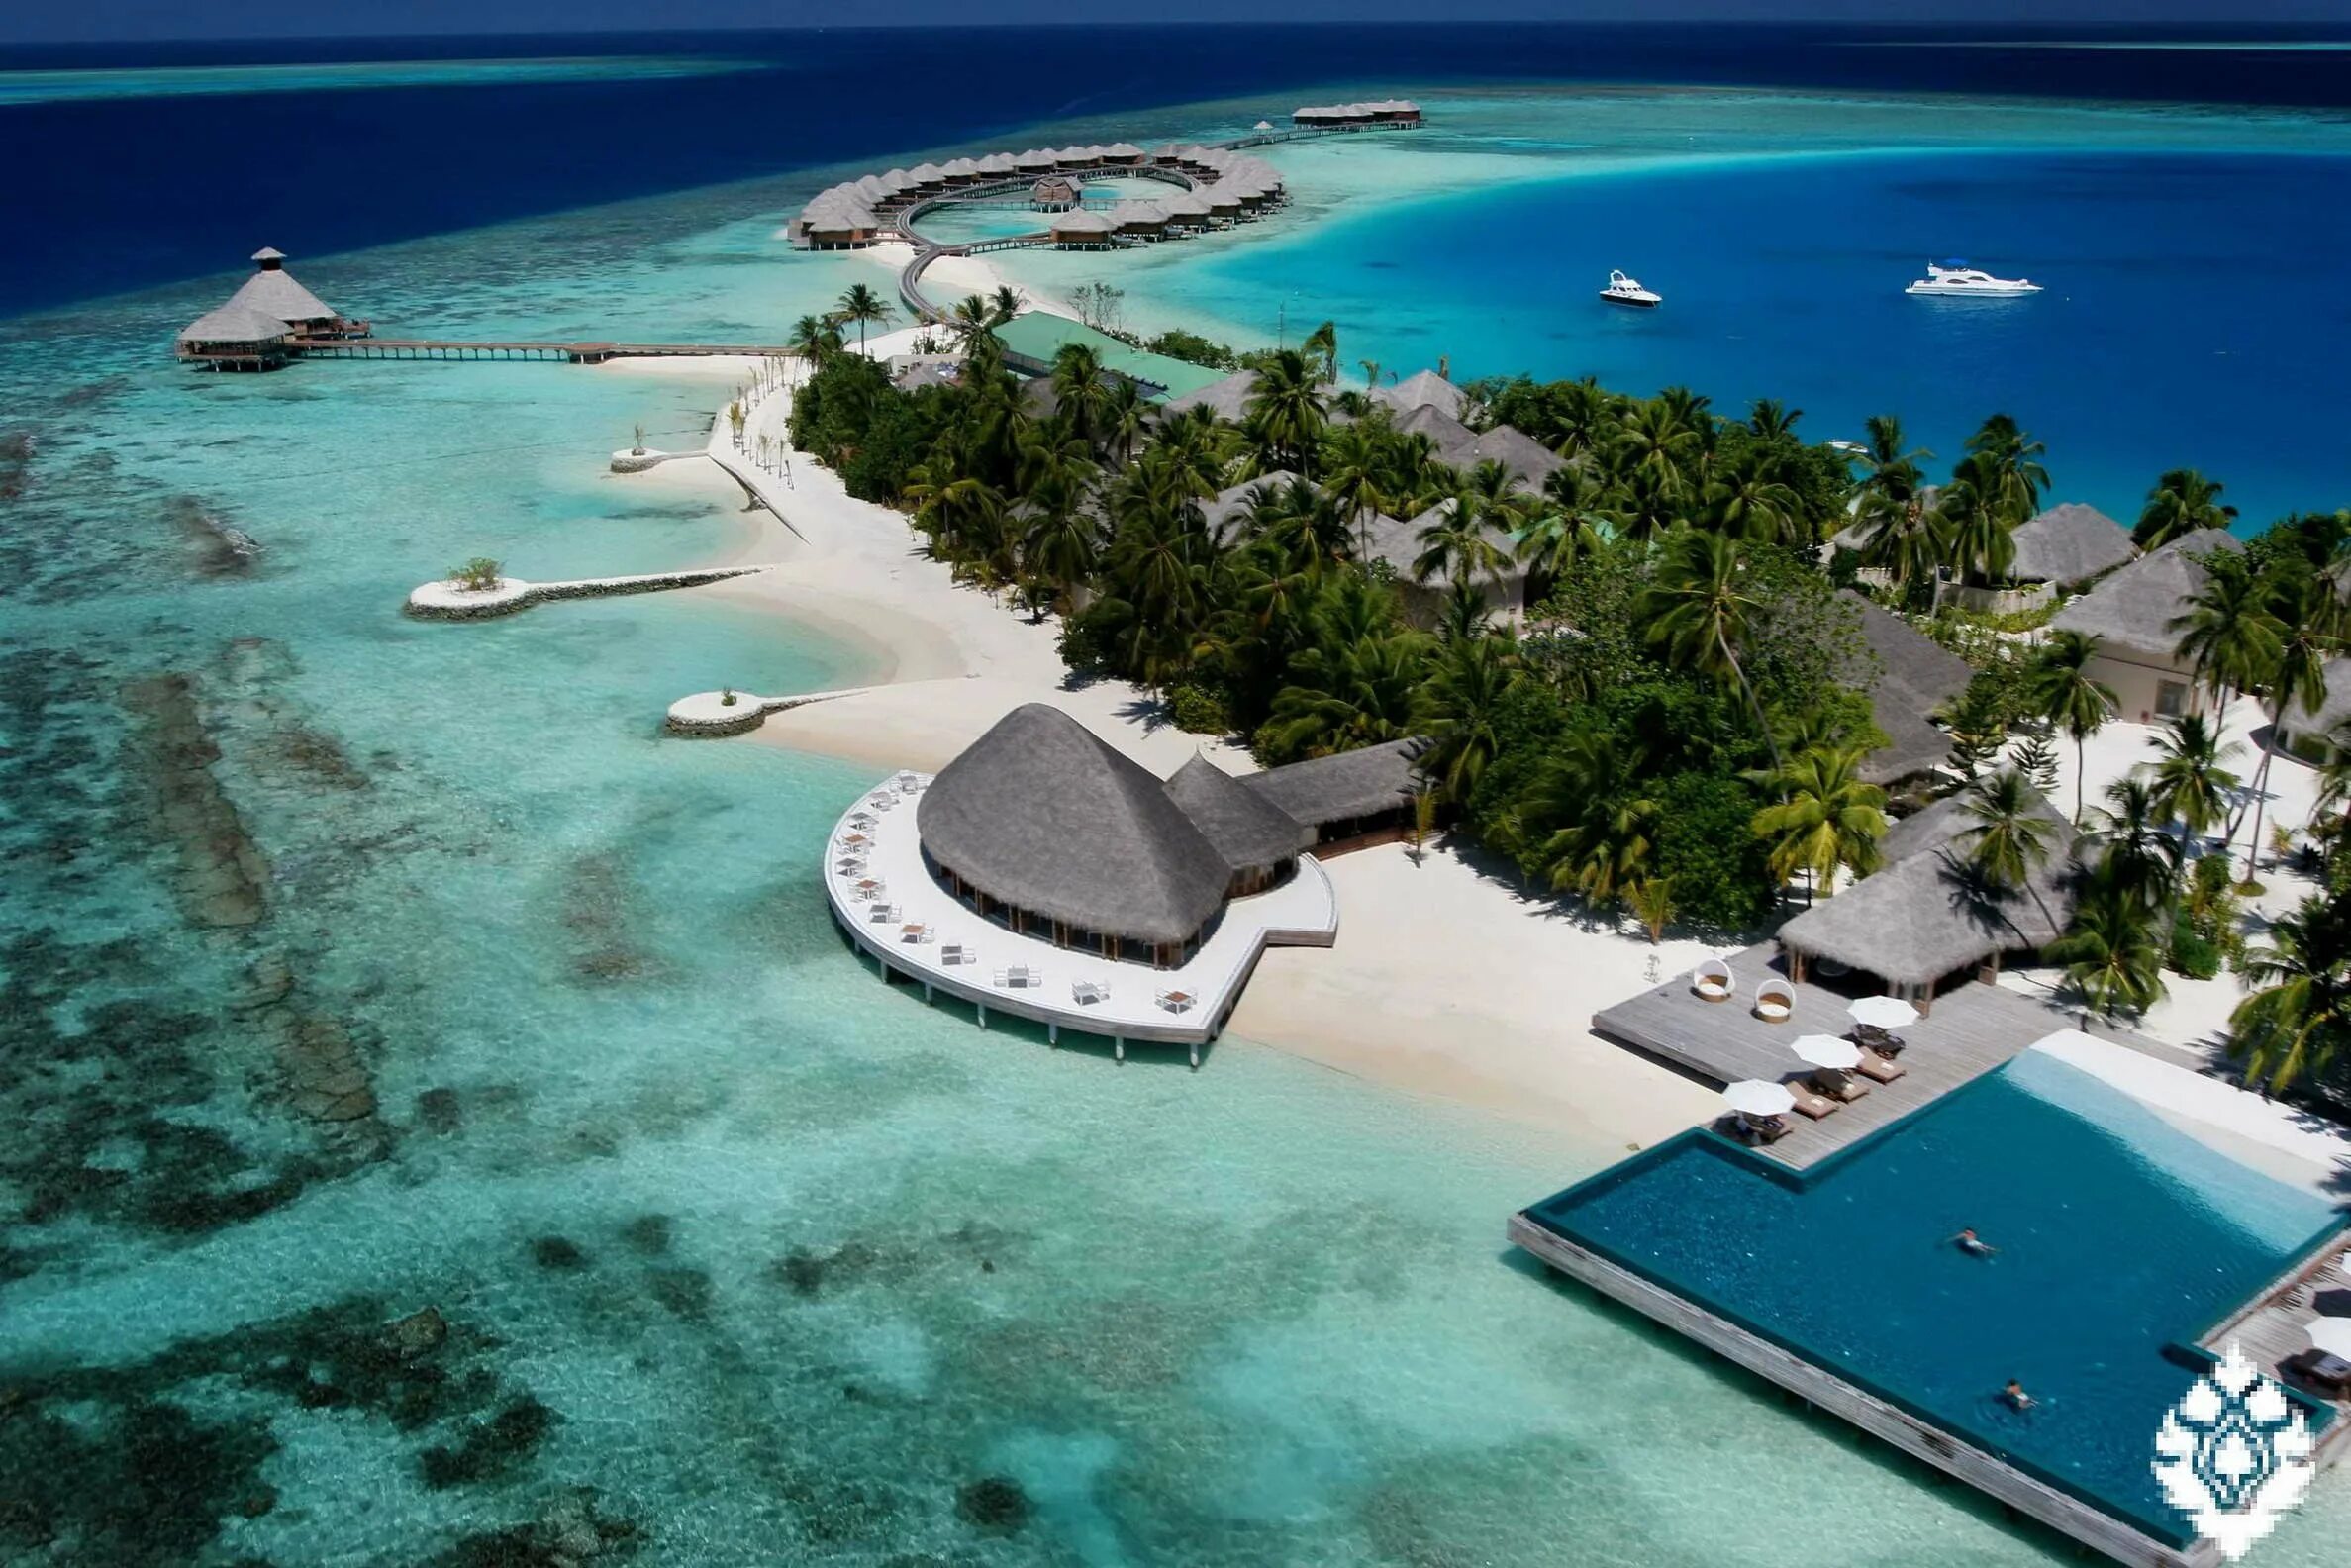 В каких странах можно отдохнуть. Остров Ган Мальдивы Лааму Атолл. North male Atoll Maldives. Мальдивы Мале аэрофото. Эфемерные острова: Мальдивы.